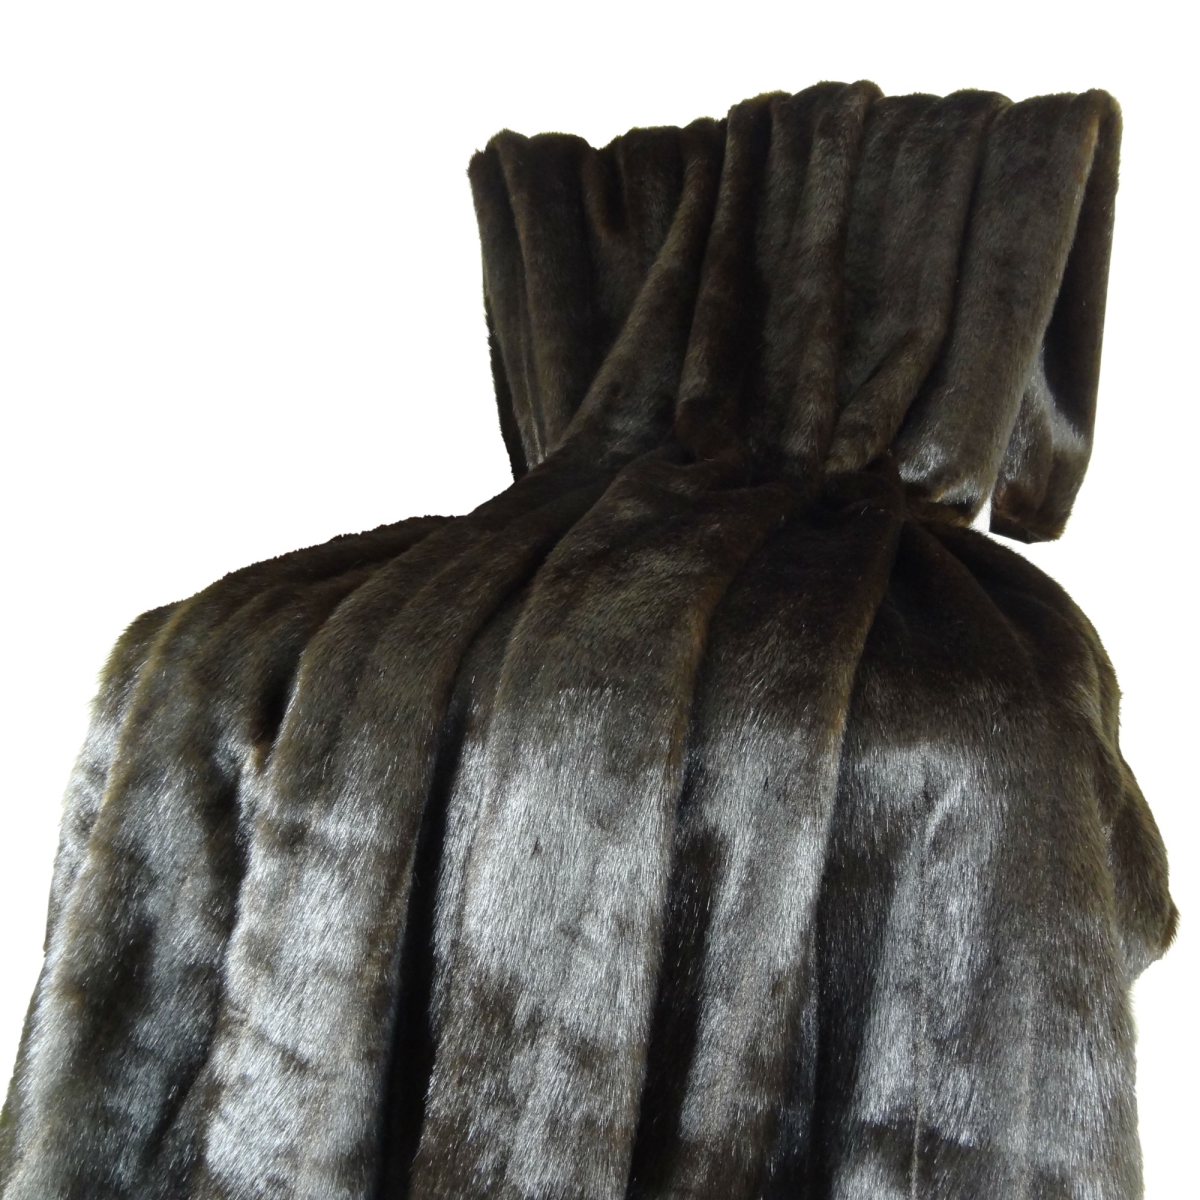 Pb16425-80x110t Tip Dyed Brown Faux Mink Fur Handmade Blanket, Dark & Brown - 80 X 110 In.